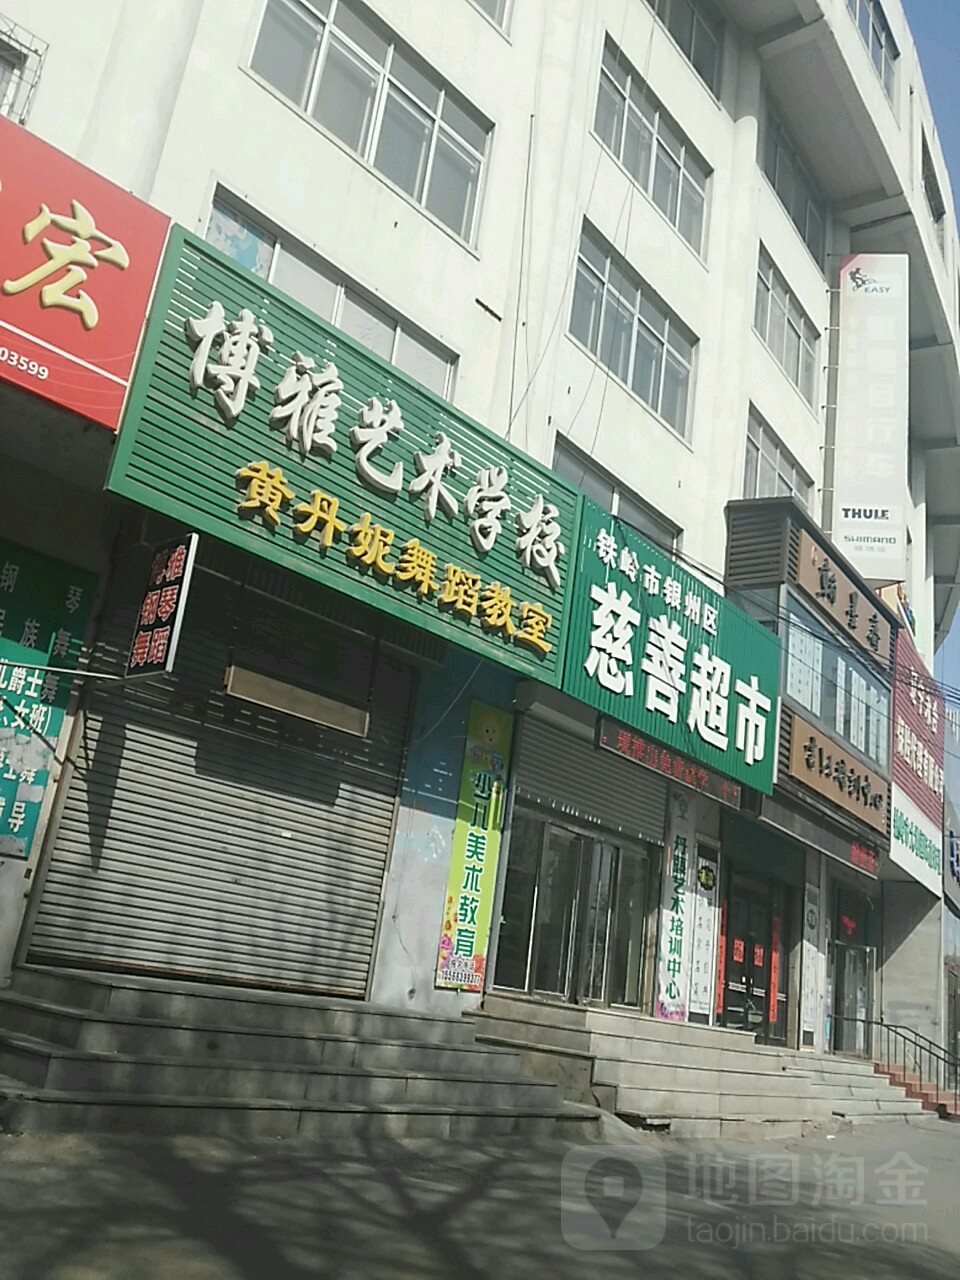 博雅艺术学校(柴河街南段)